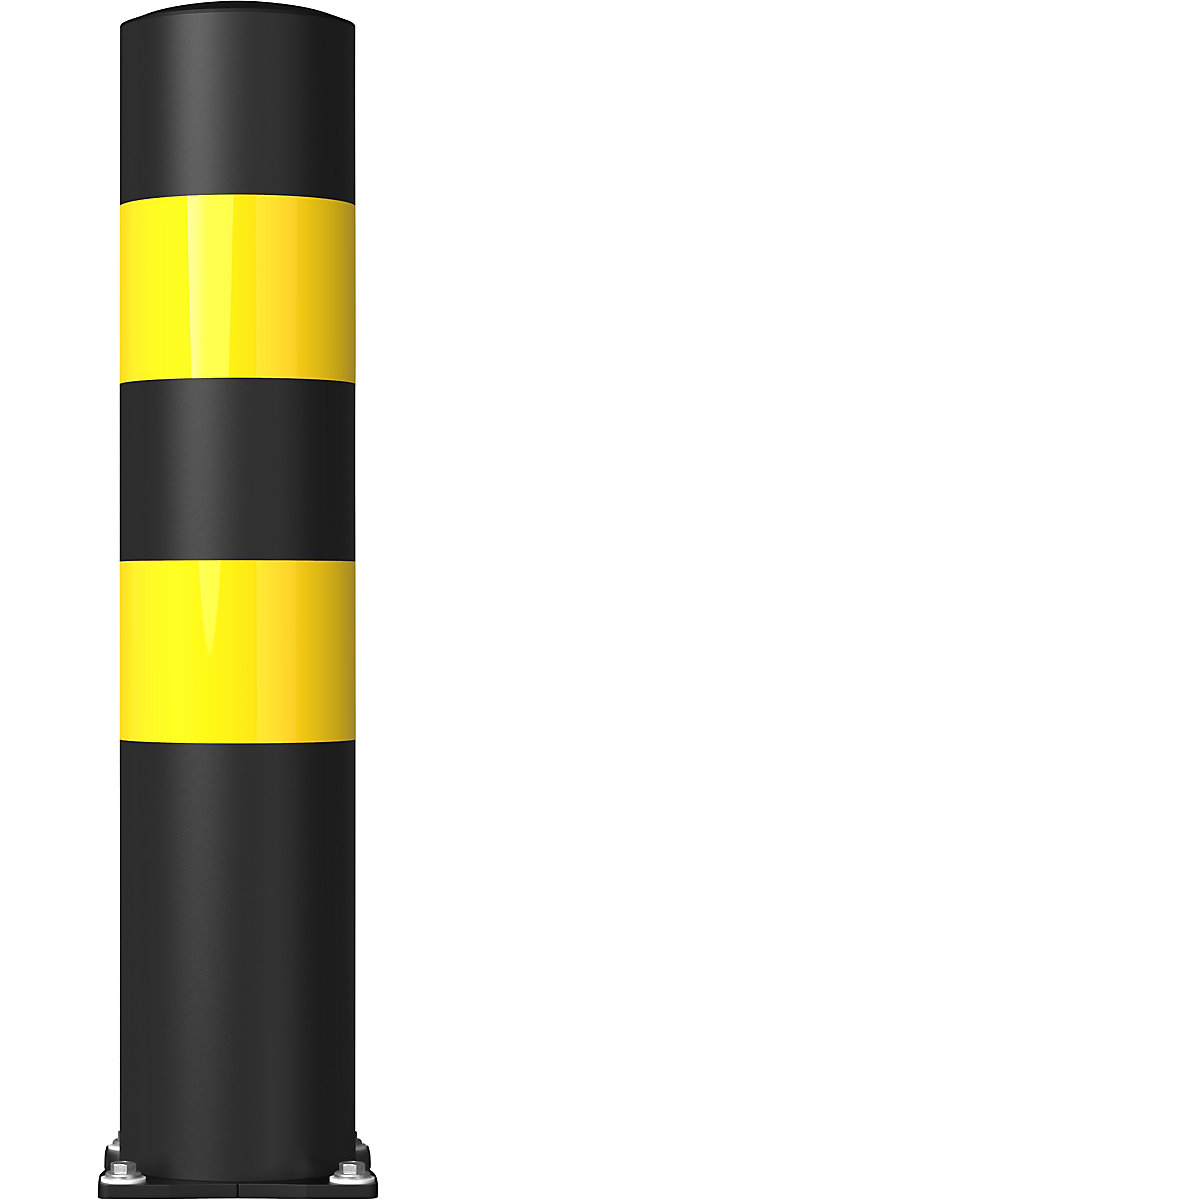 FLEX IMPACT Rammschutzpoller, Ø 200 mm, Höhe 1000 mm, schwarz, 2 Reflexionsstreifen, verzinkte Bodenplatte